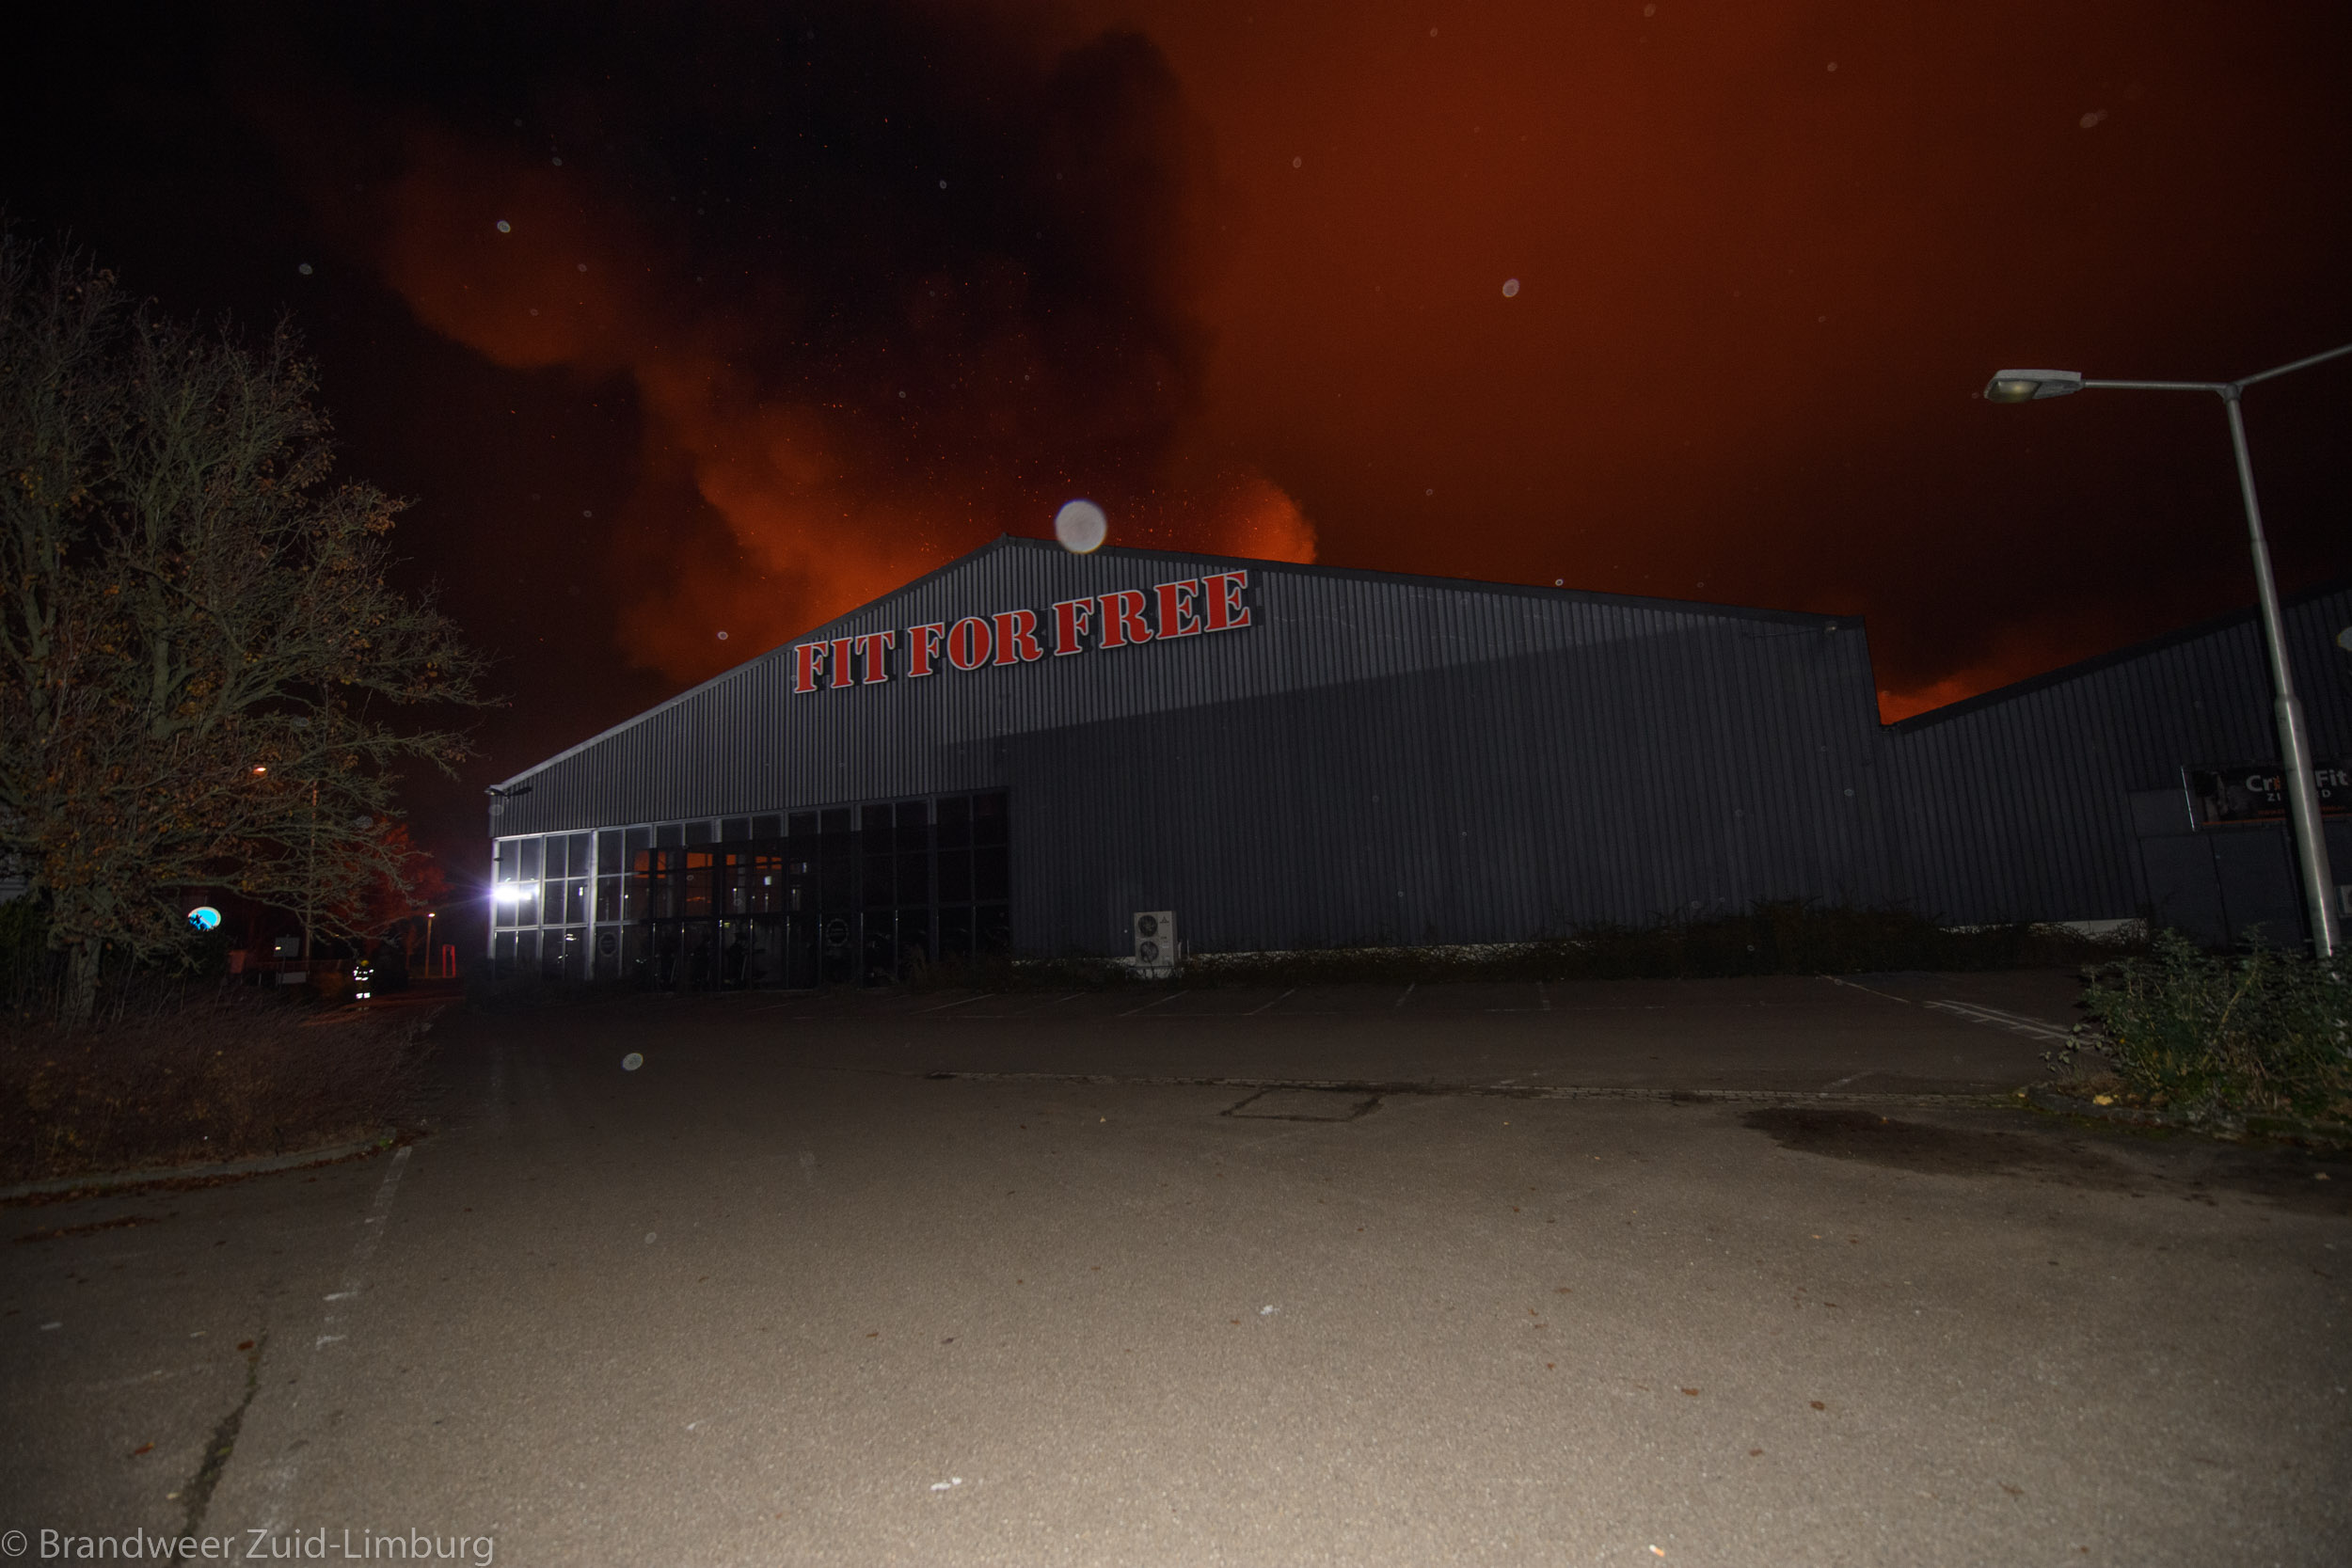 werper Makkelijk te gebeuren afwijzing 11-12-2022 – Sittard, Sport en fitnesscomplex verwoest bij grote brand –  Brandweer Zuid-Limburg Team FVT